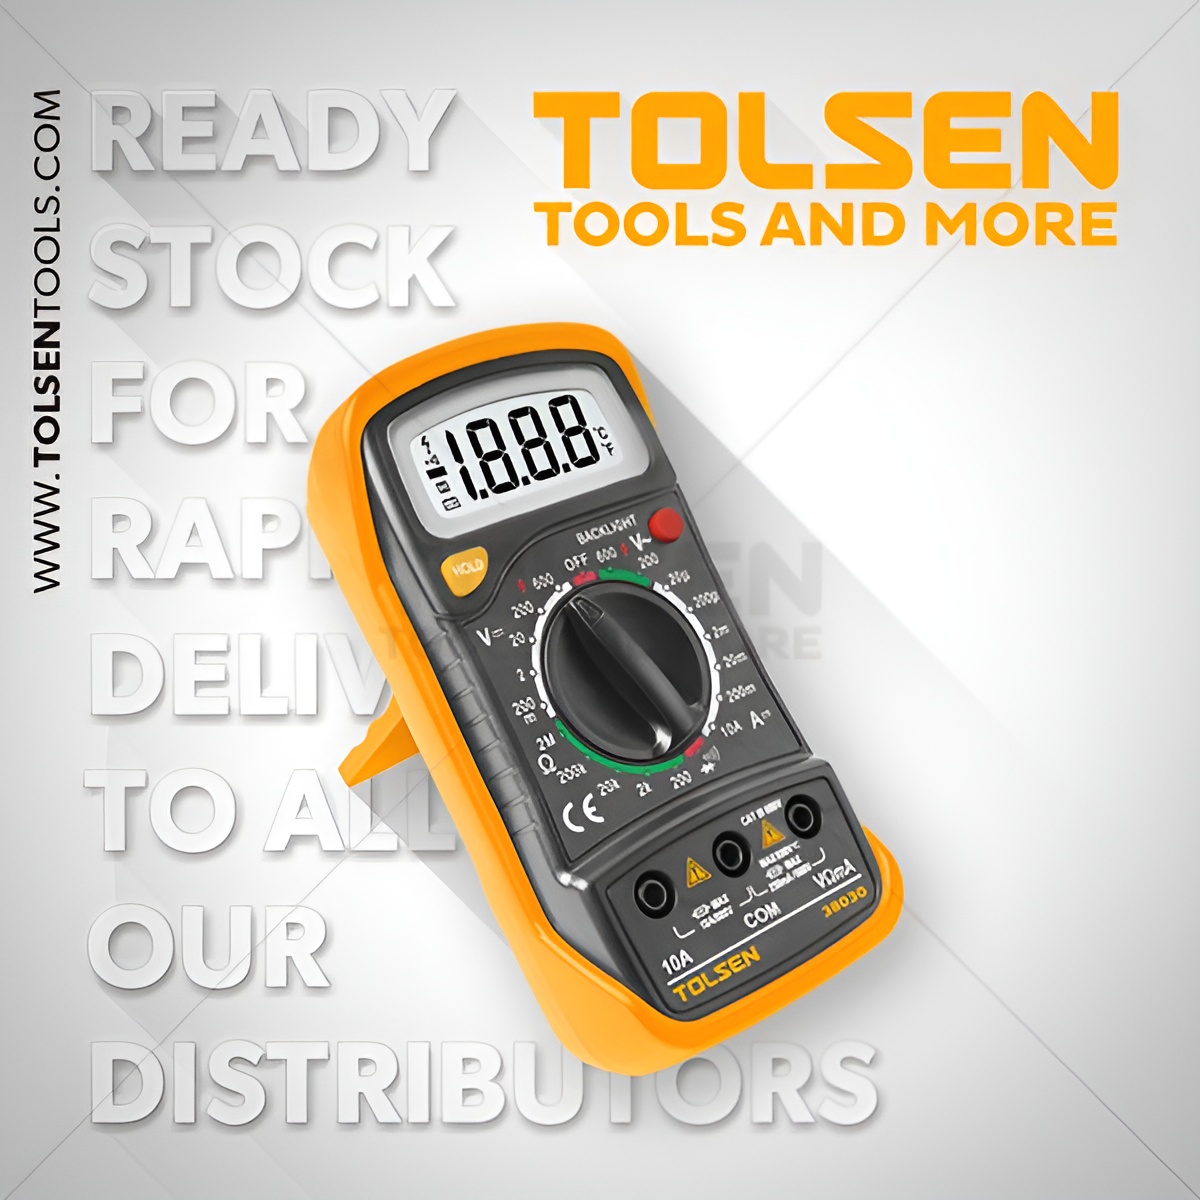 Hình ảnh 1 của mặt hàng Đồng hồ điện tử vạn năng Tolsen 38030